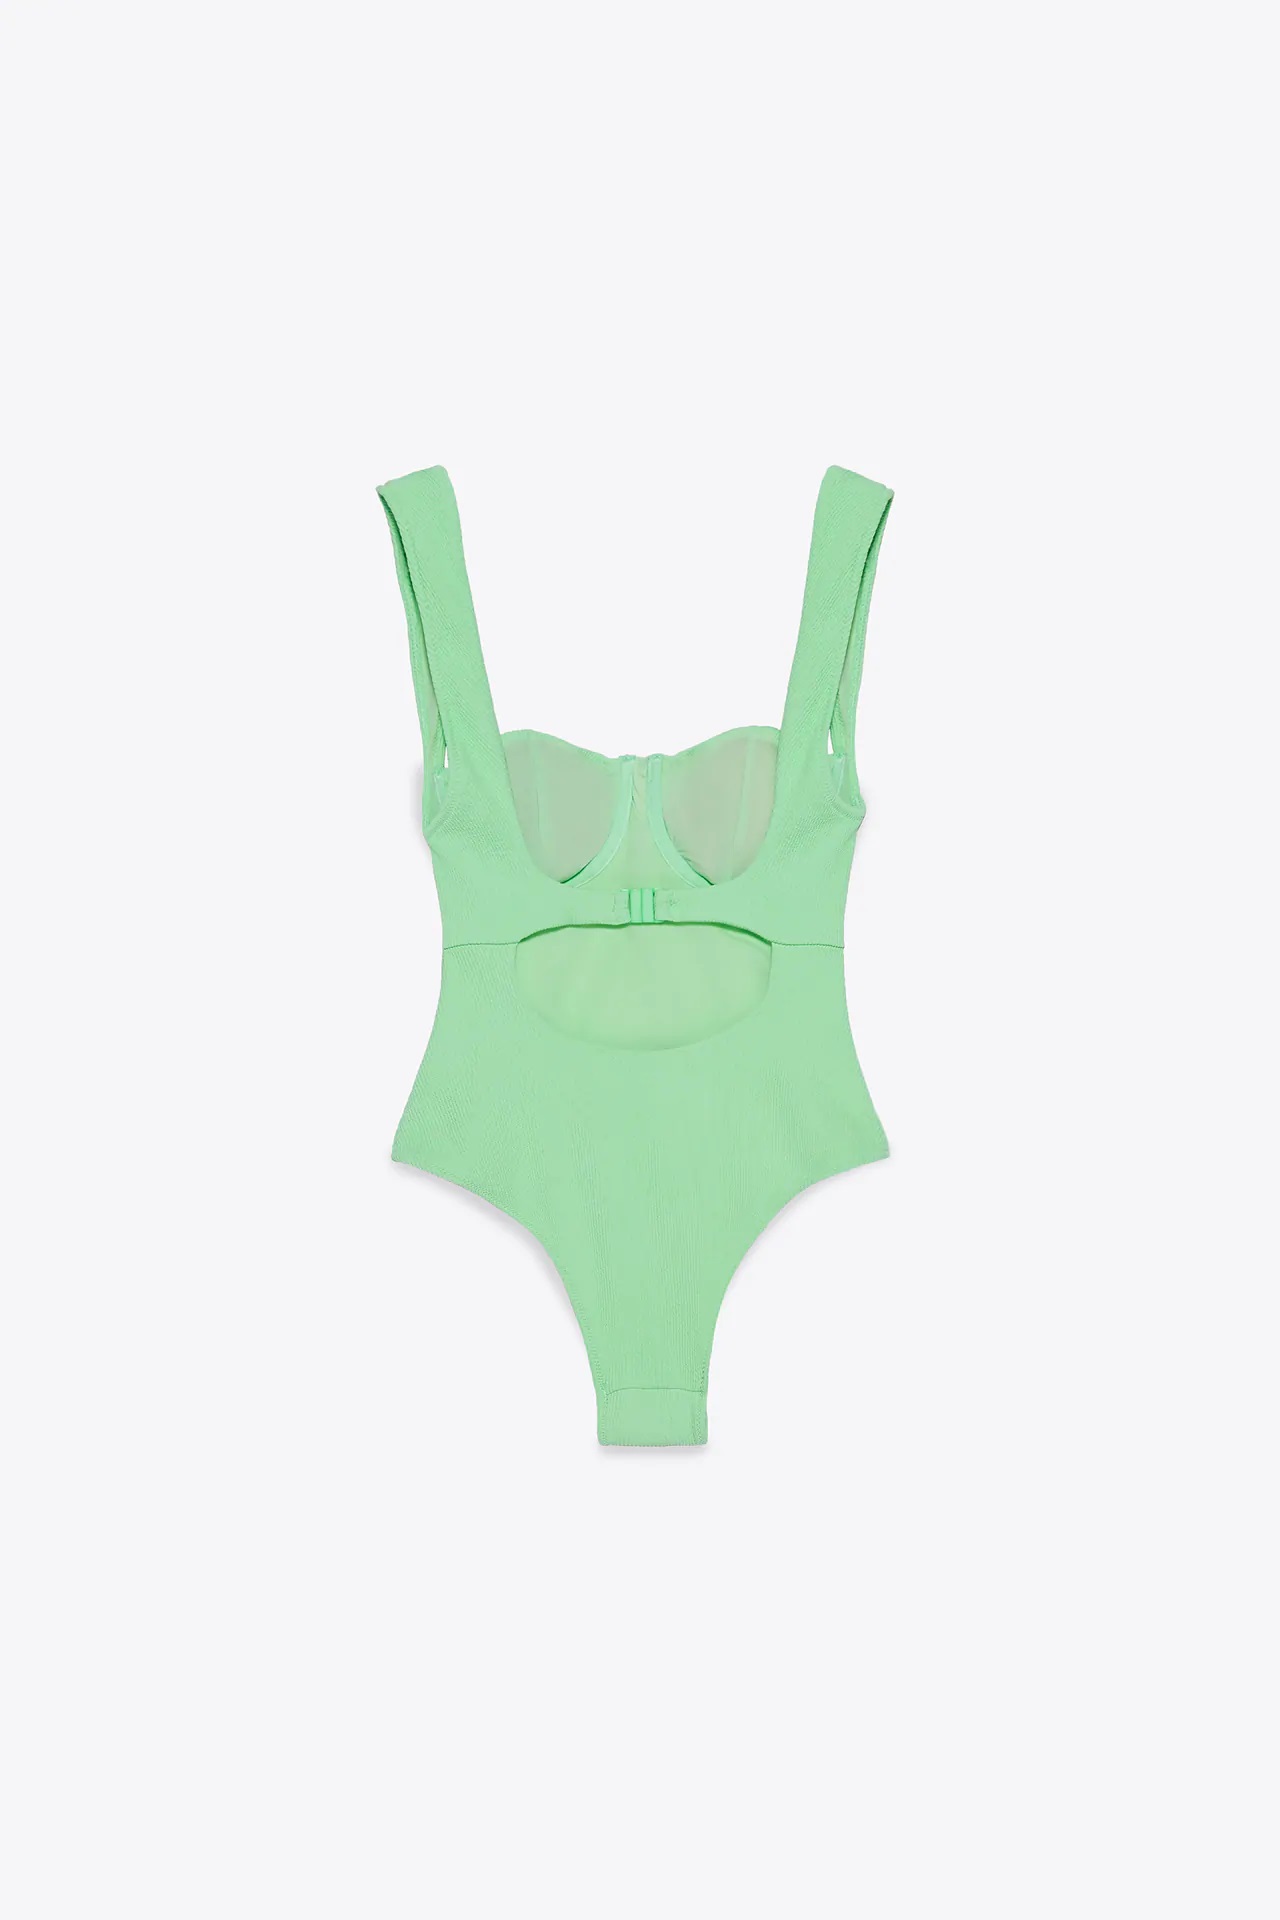 Este es el bañador verde de Zara que estiliza la figura y resalta el pecho, que puedes usar como body